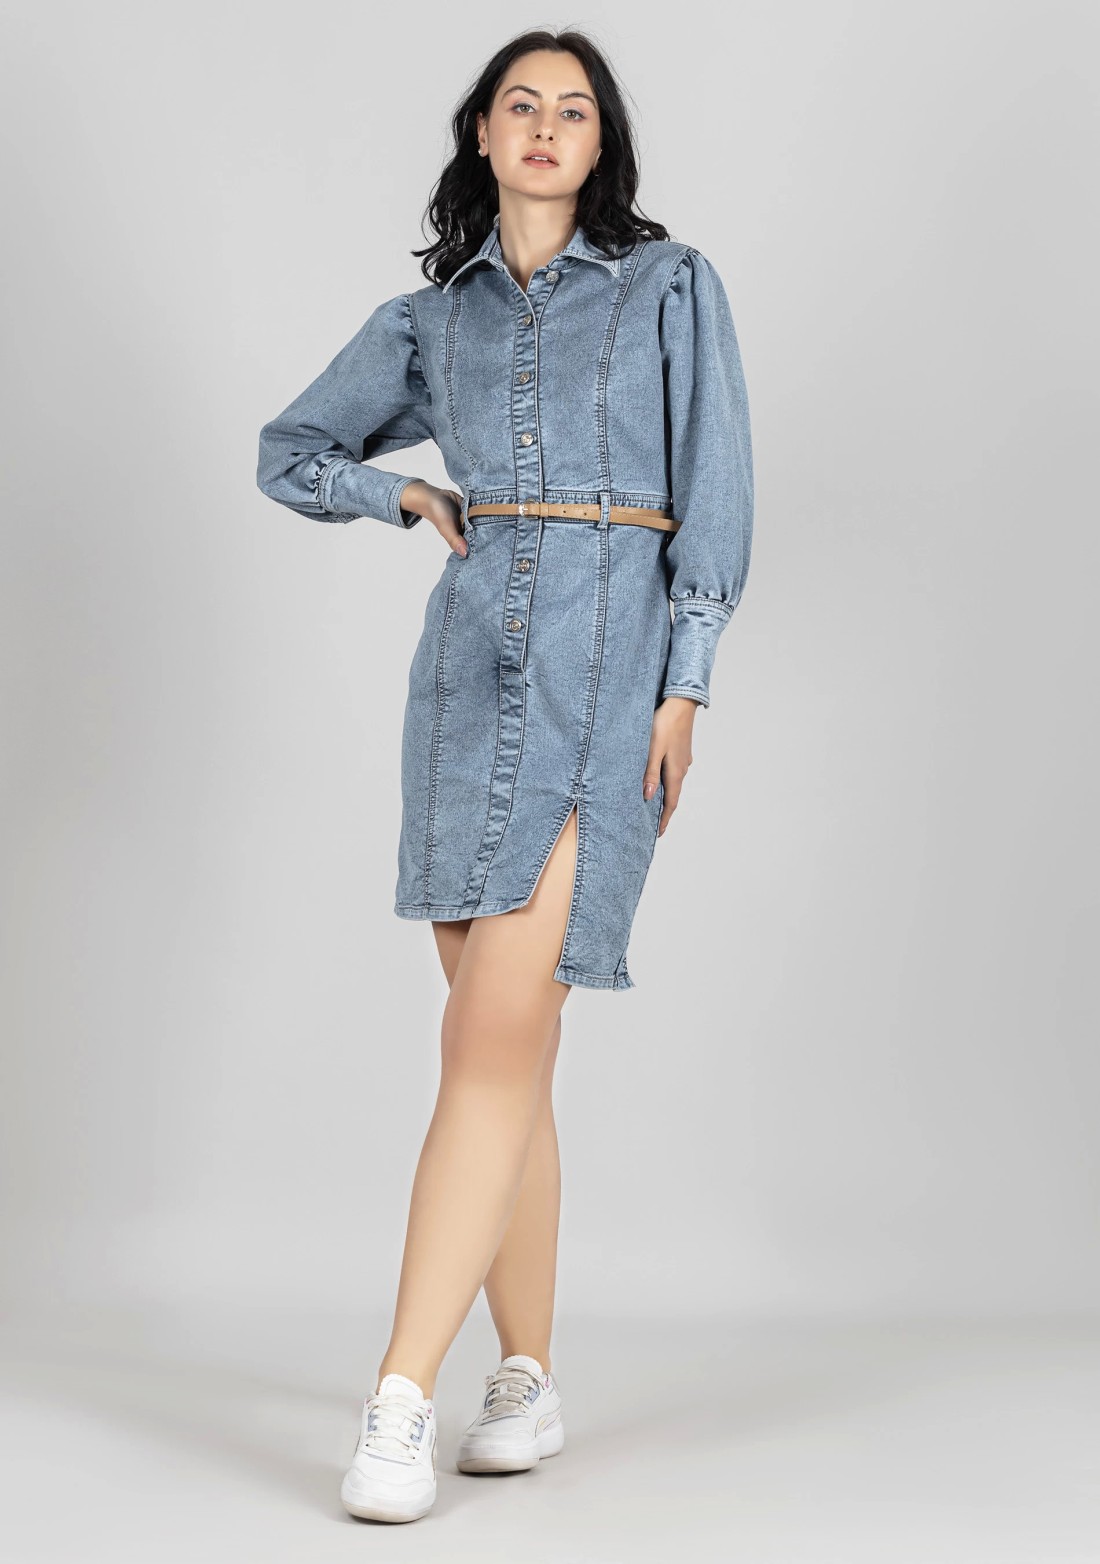 Buy Blue Printed Tencil Denim Short Dress Online - Label Ritu Kumar India  Store View